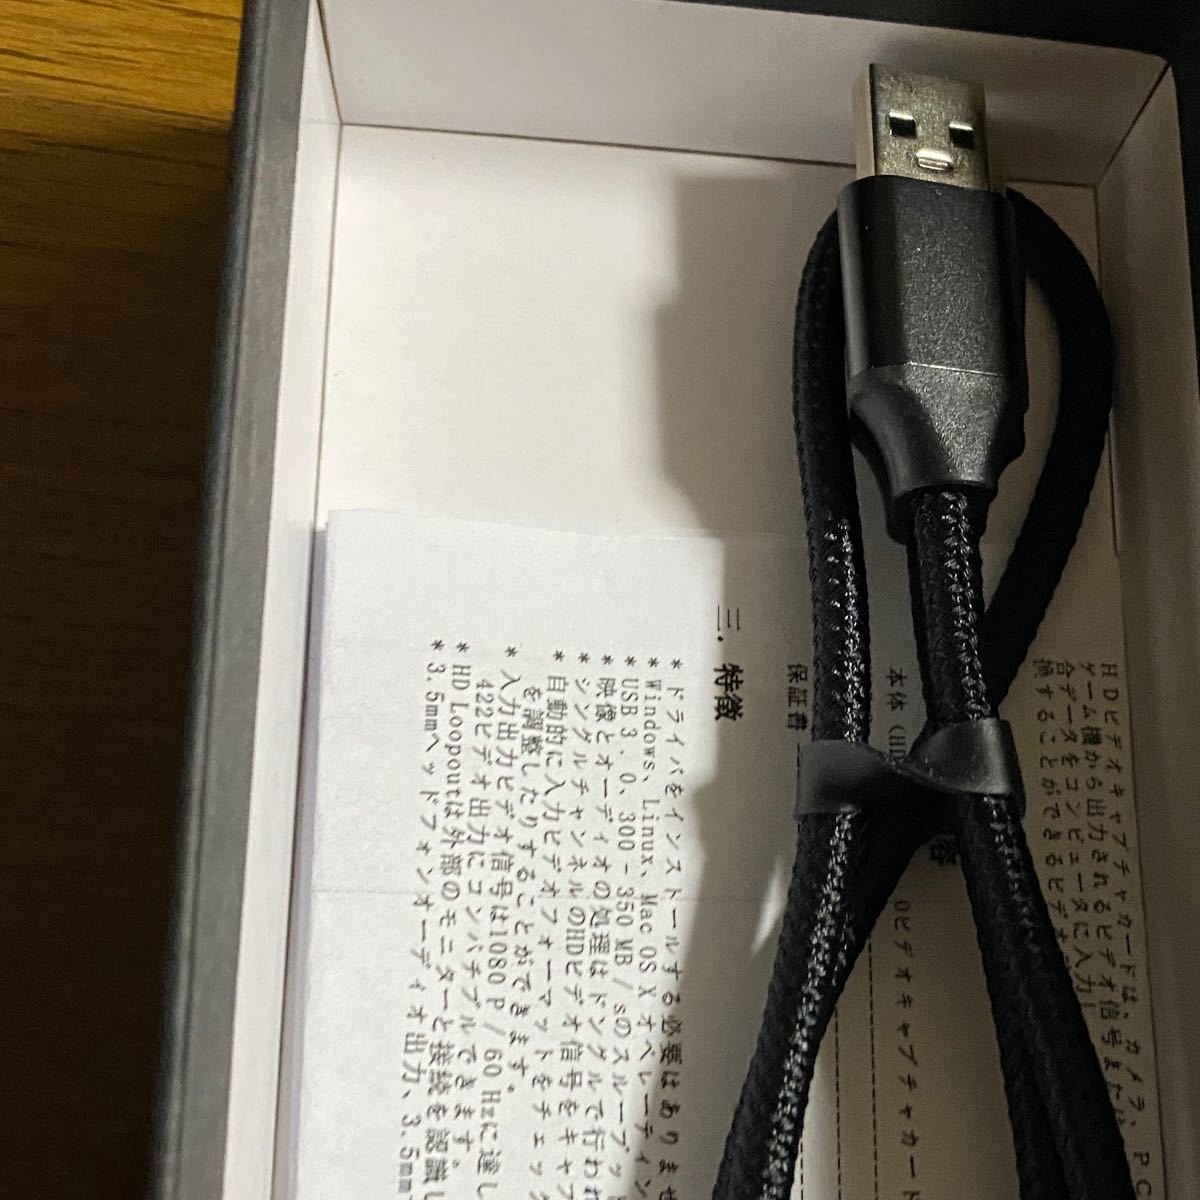 SHUONEキャプチャーボード、USB 3.0 HDMIゲームキャプチャデバイス